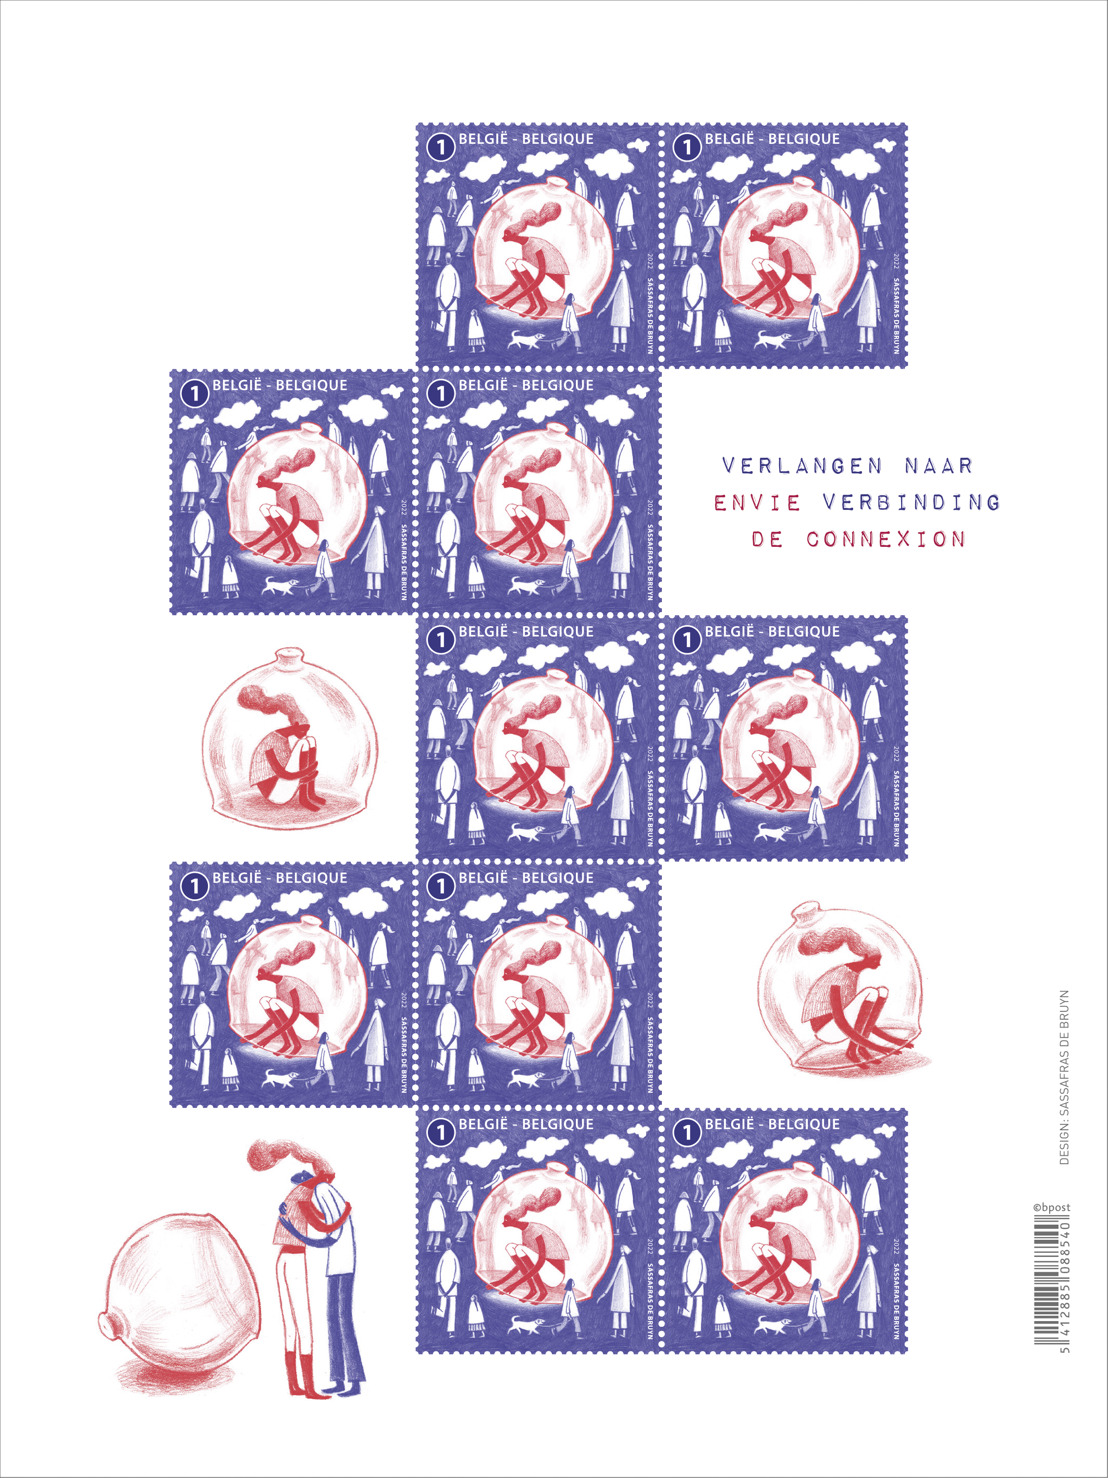 bpost encourage les Belges à se reconnecter les un(e)s aux autres grâce à des cartes postales gratuites et un timbre-poste consacré au thème « envie de connexion »